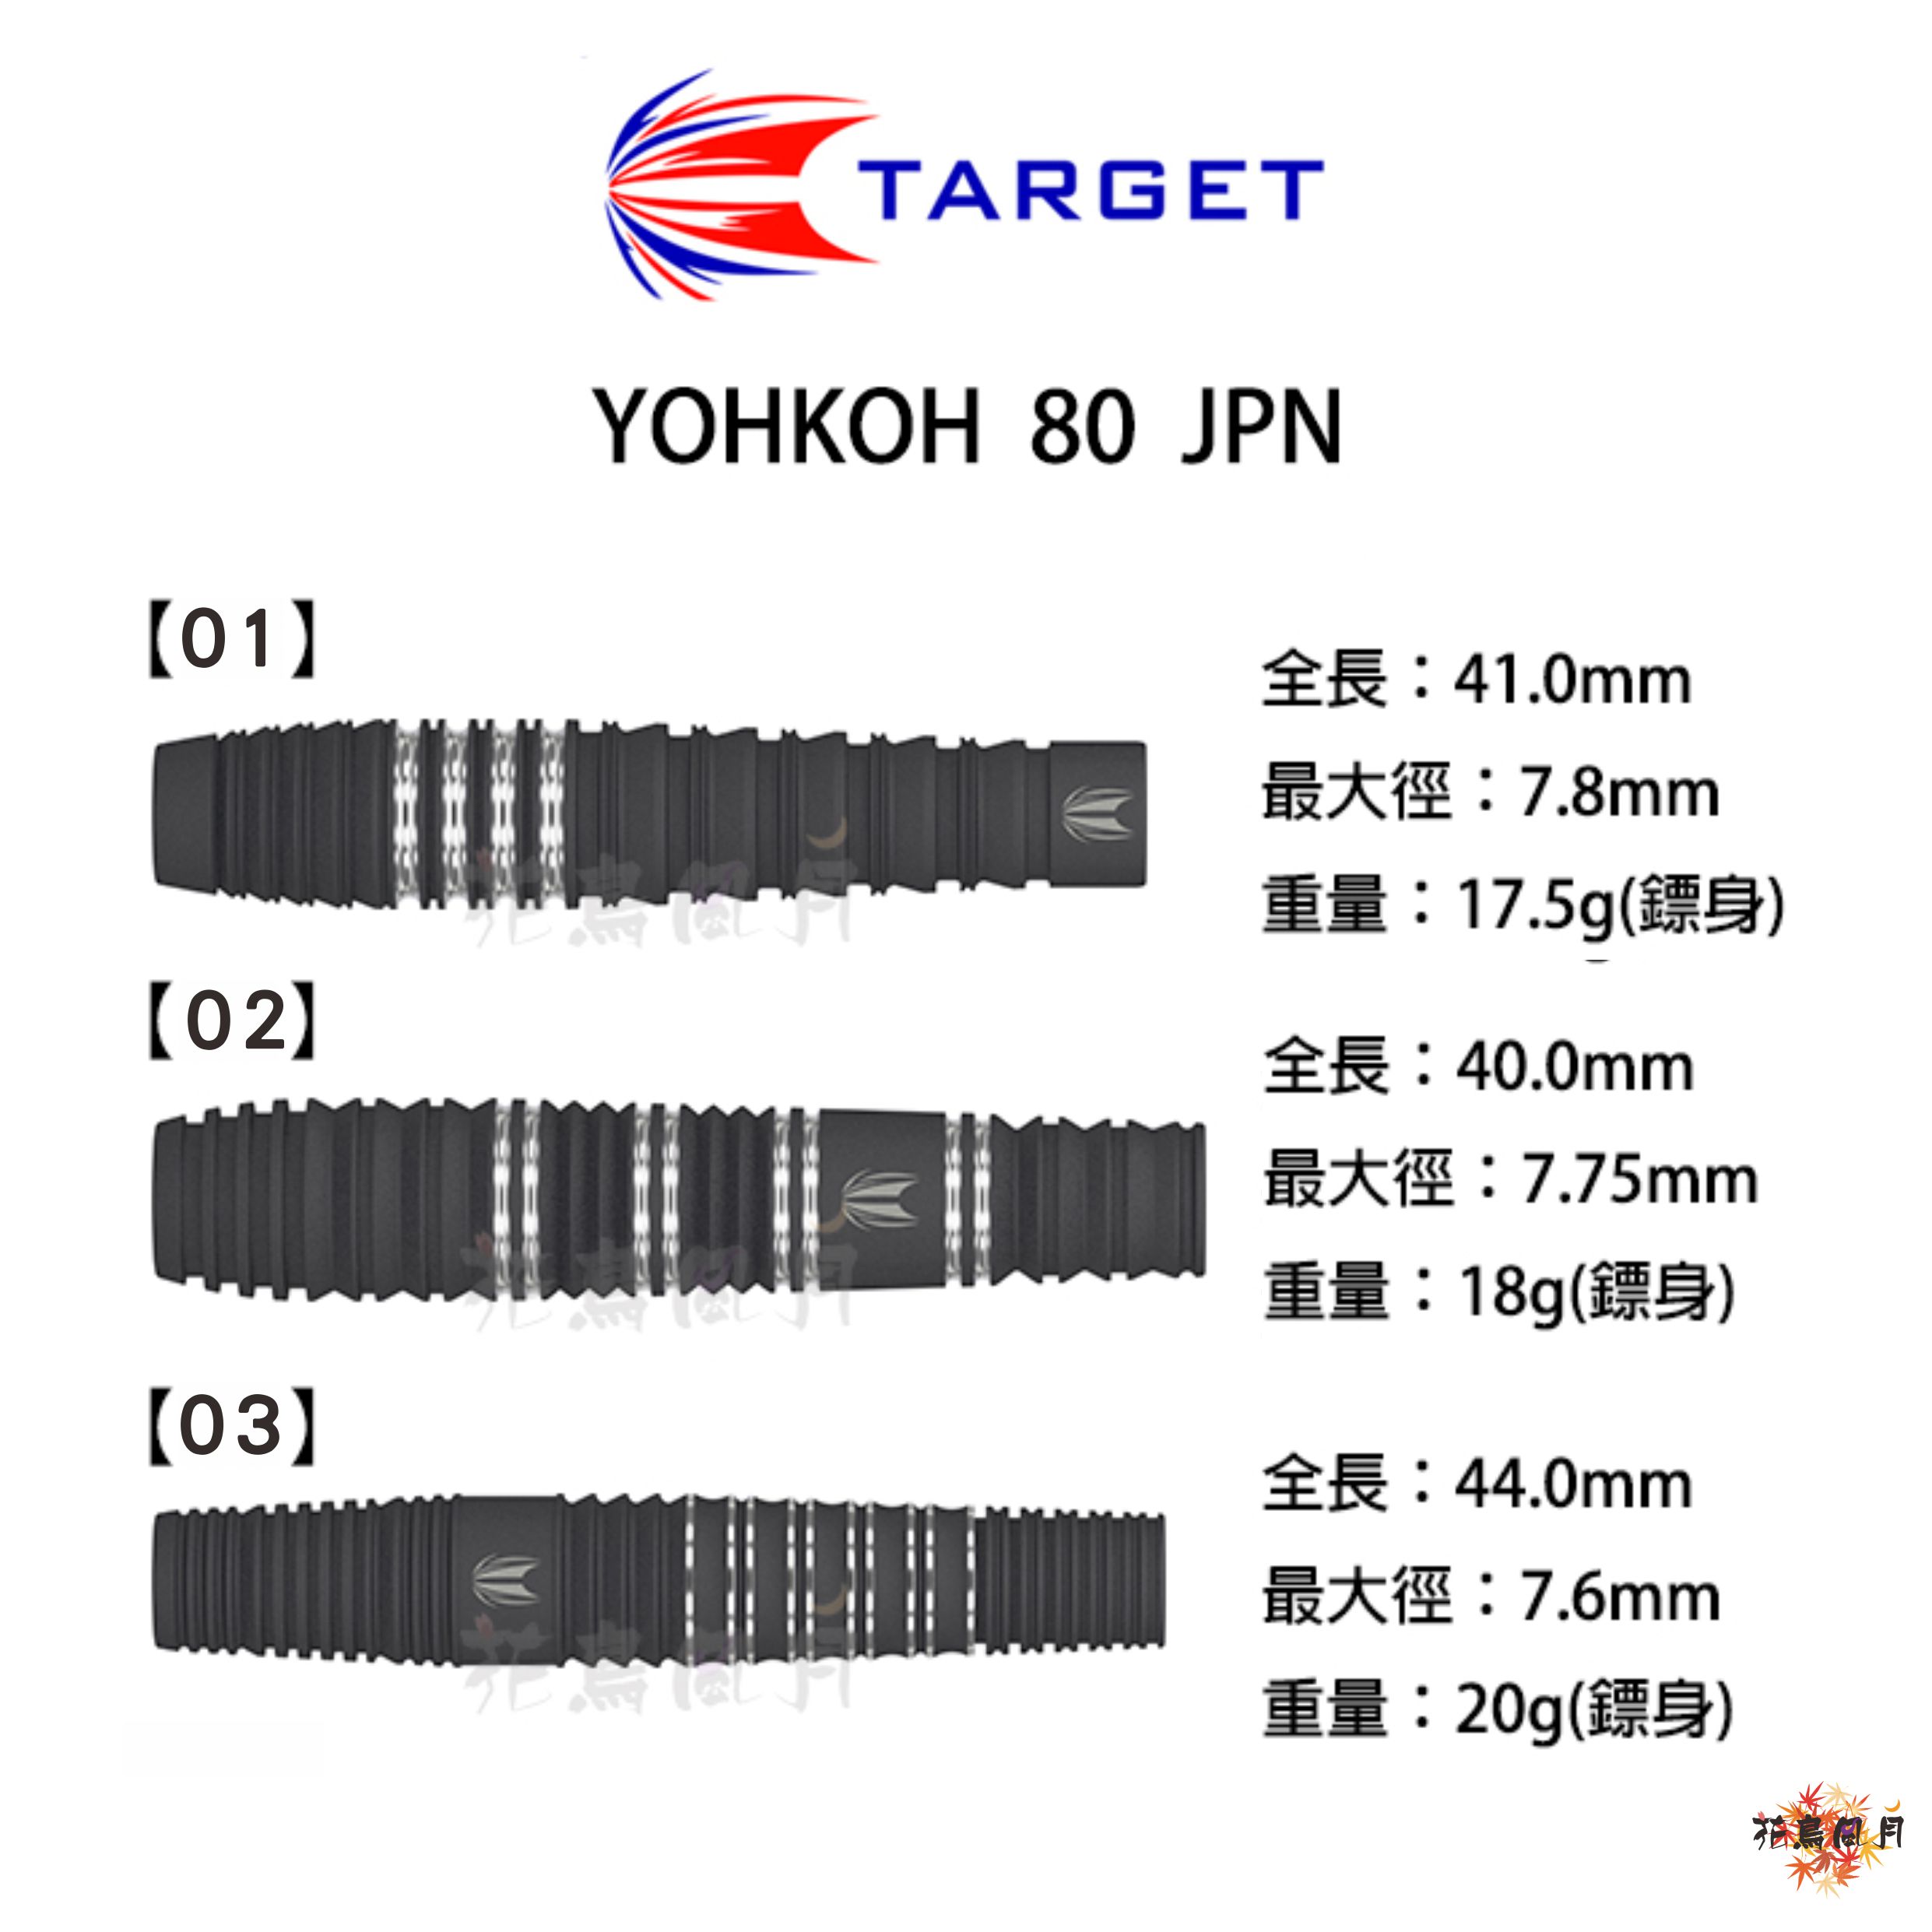 TARGET-YOHKOH-JPN80